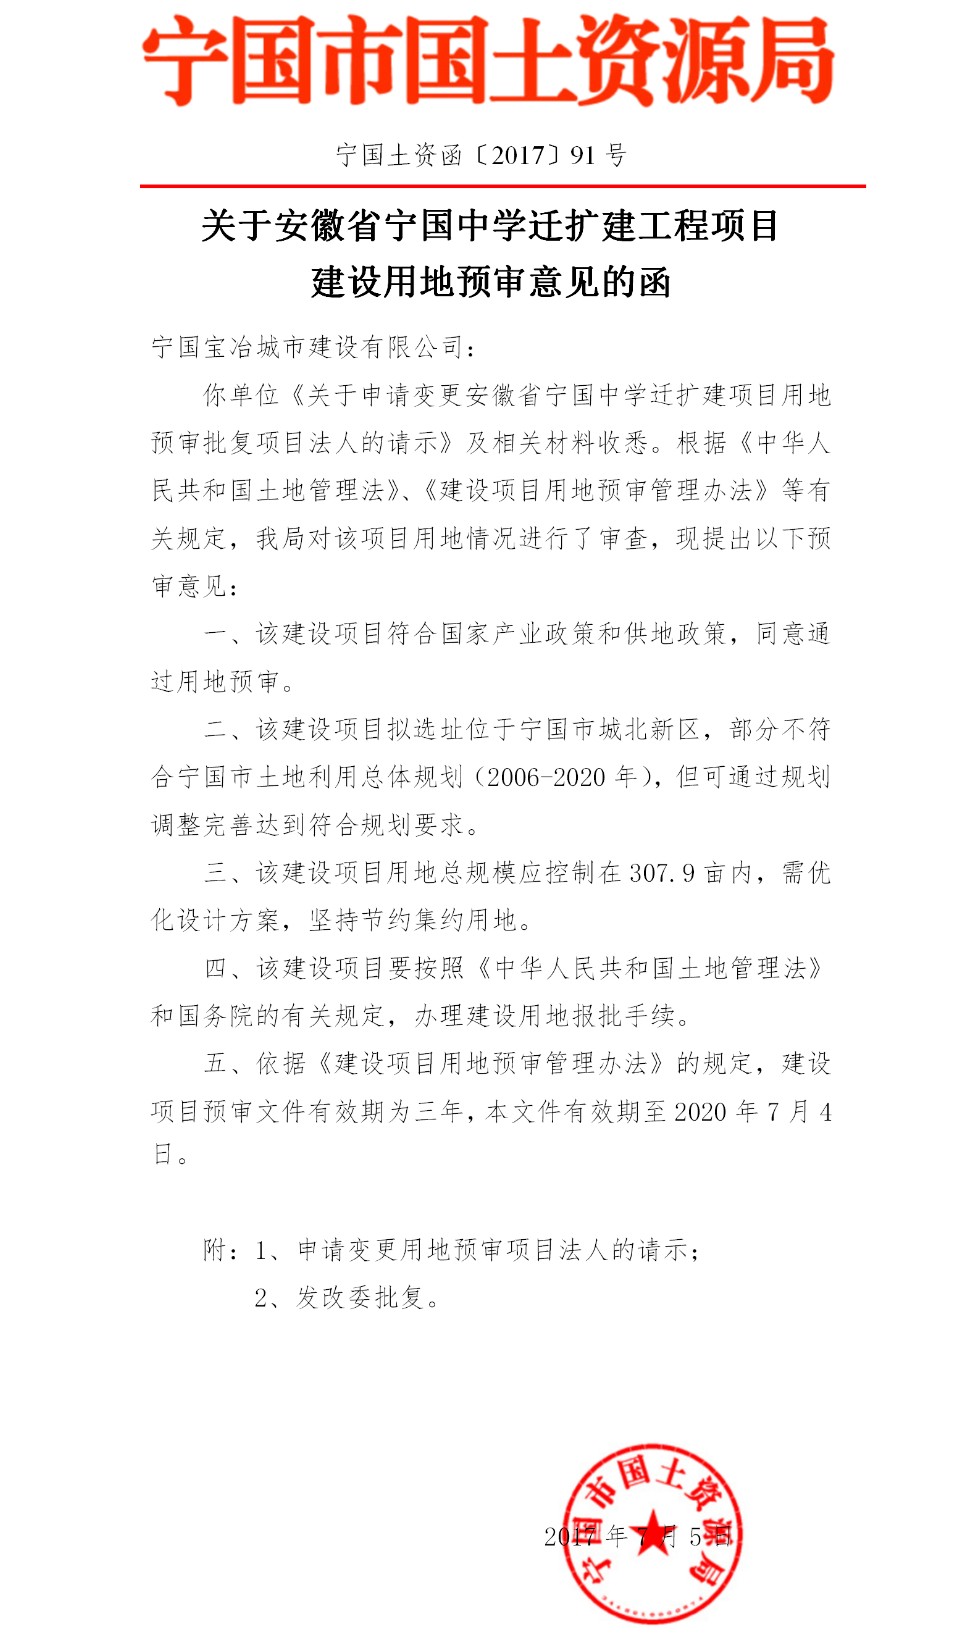 关于安徽省宁国中学迁扩建工程项目建设用地预审意见的函(1).png